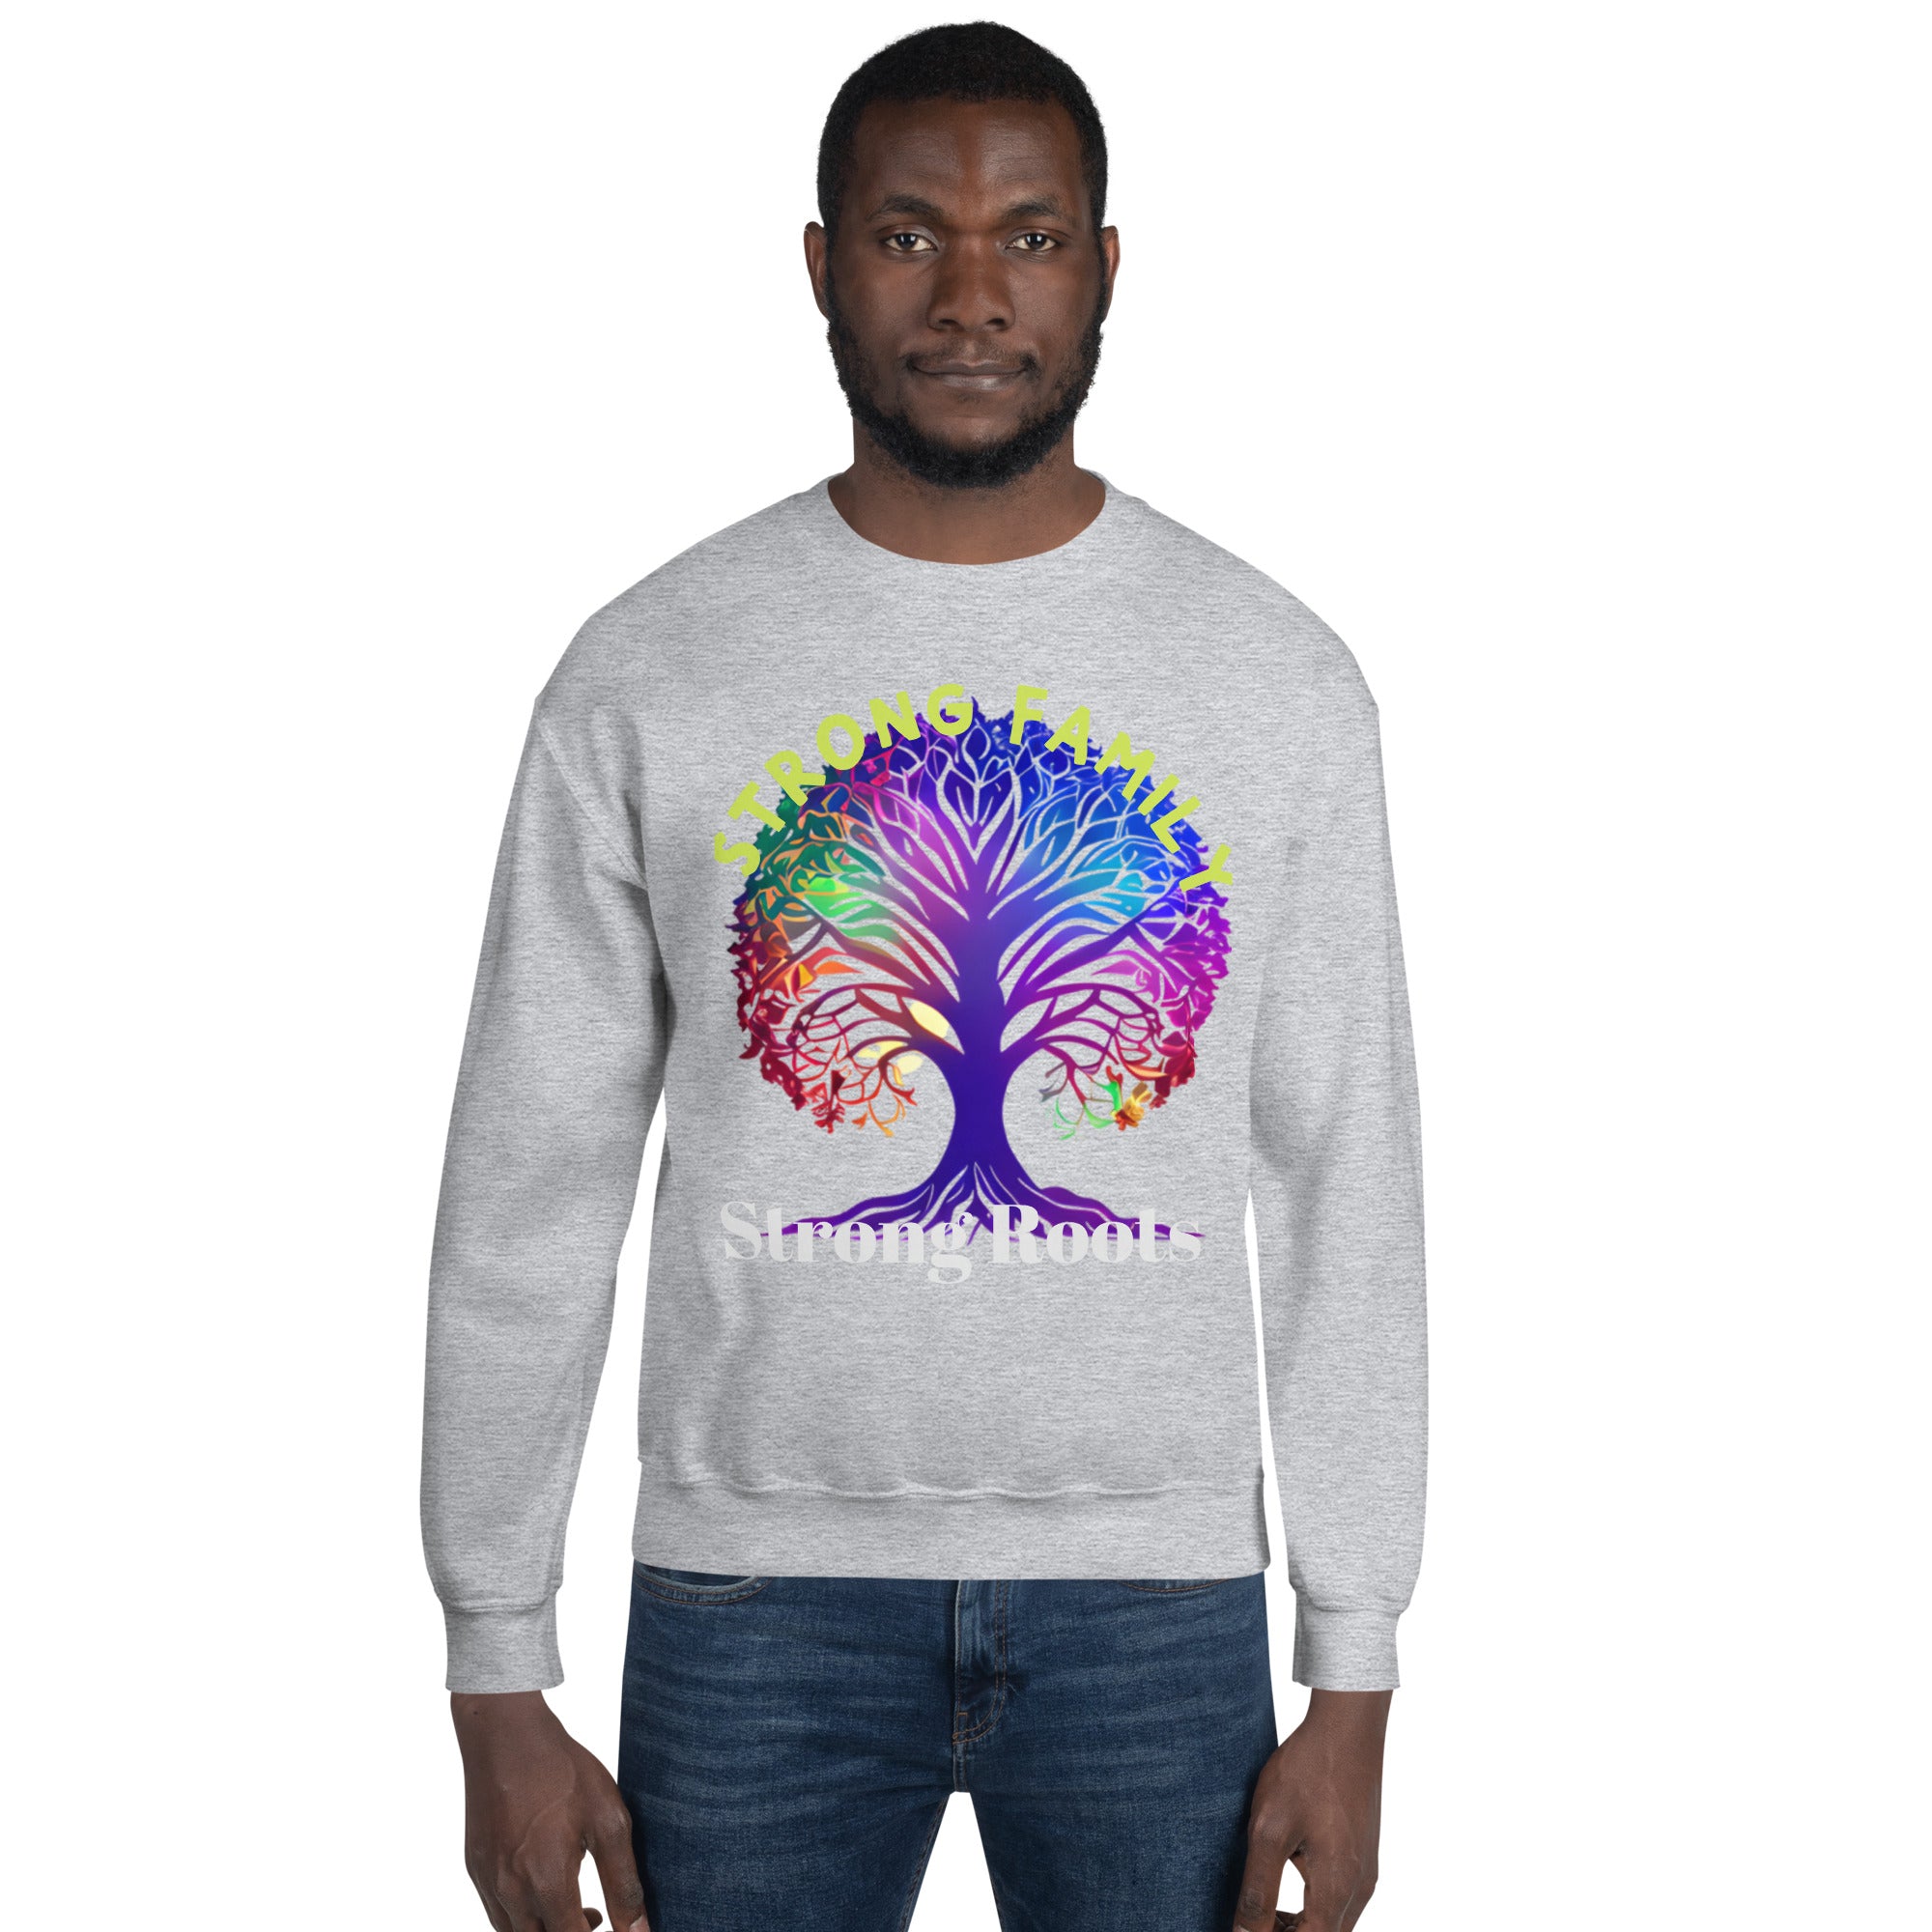 Unisex Sweatshirt, Gift, Back to School. Family Tree,